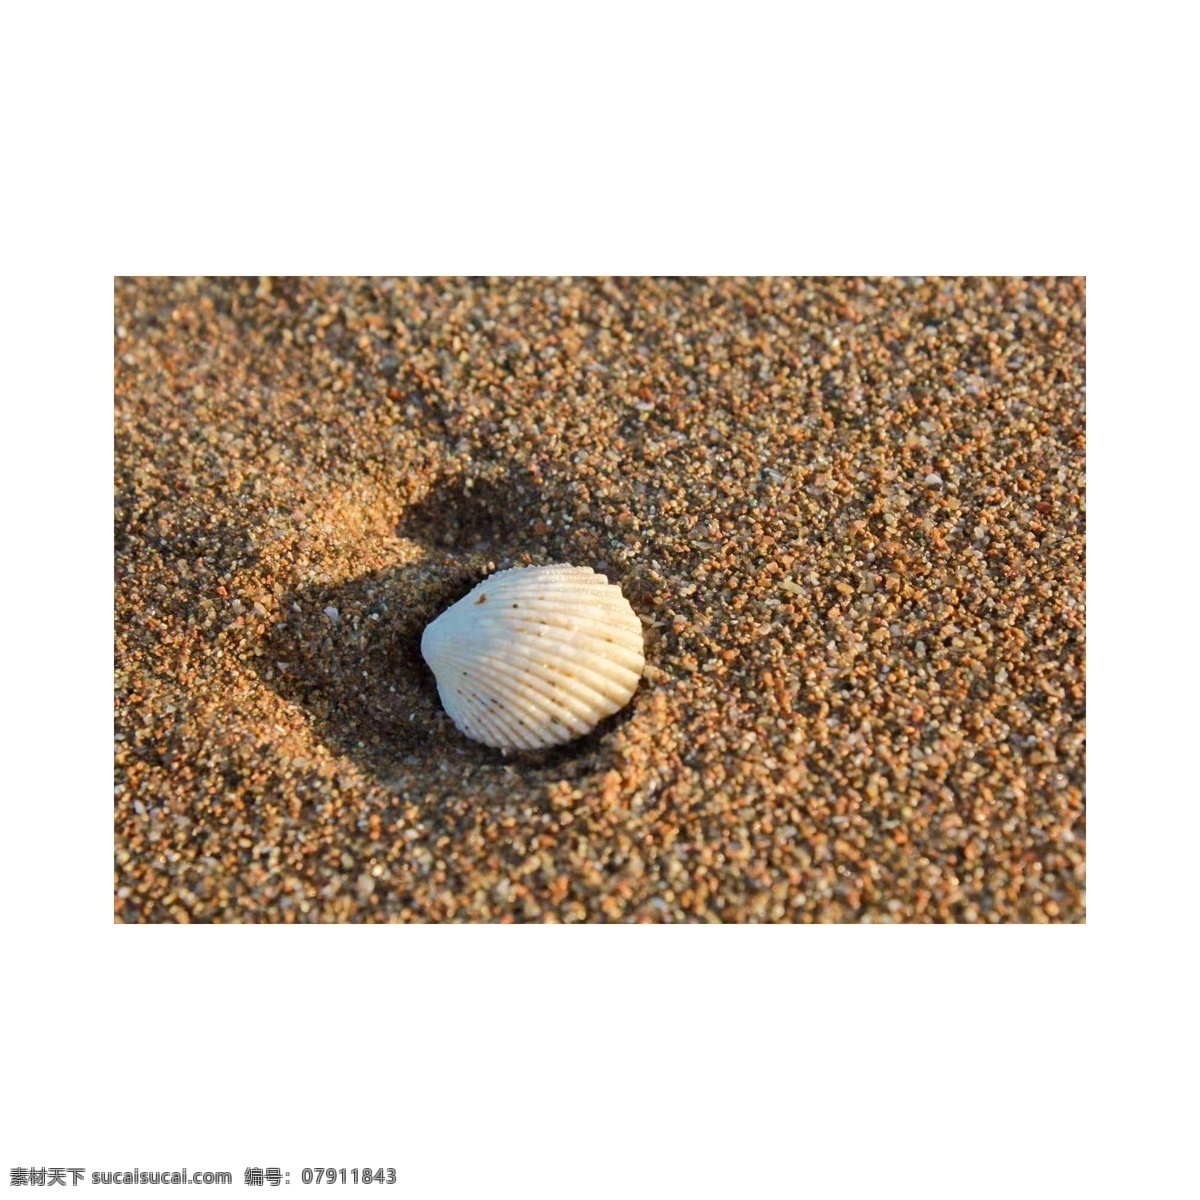 沙滩 上 白色 贝壳 沙子 海边 旅游 度假 纪念 阳光 浪漫 白色贝壳 装饰 大海边 海滩 旅行